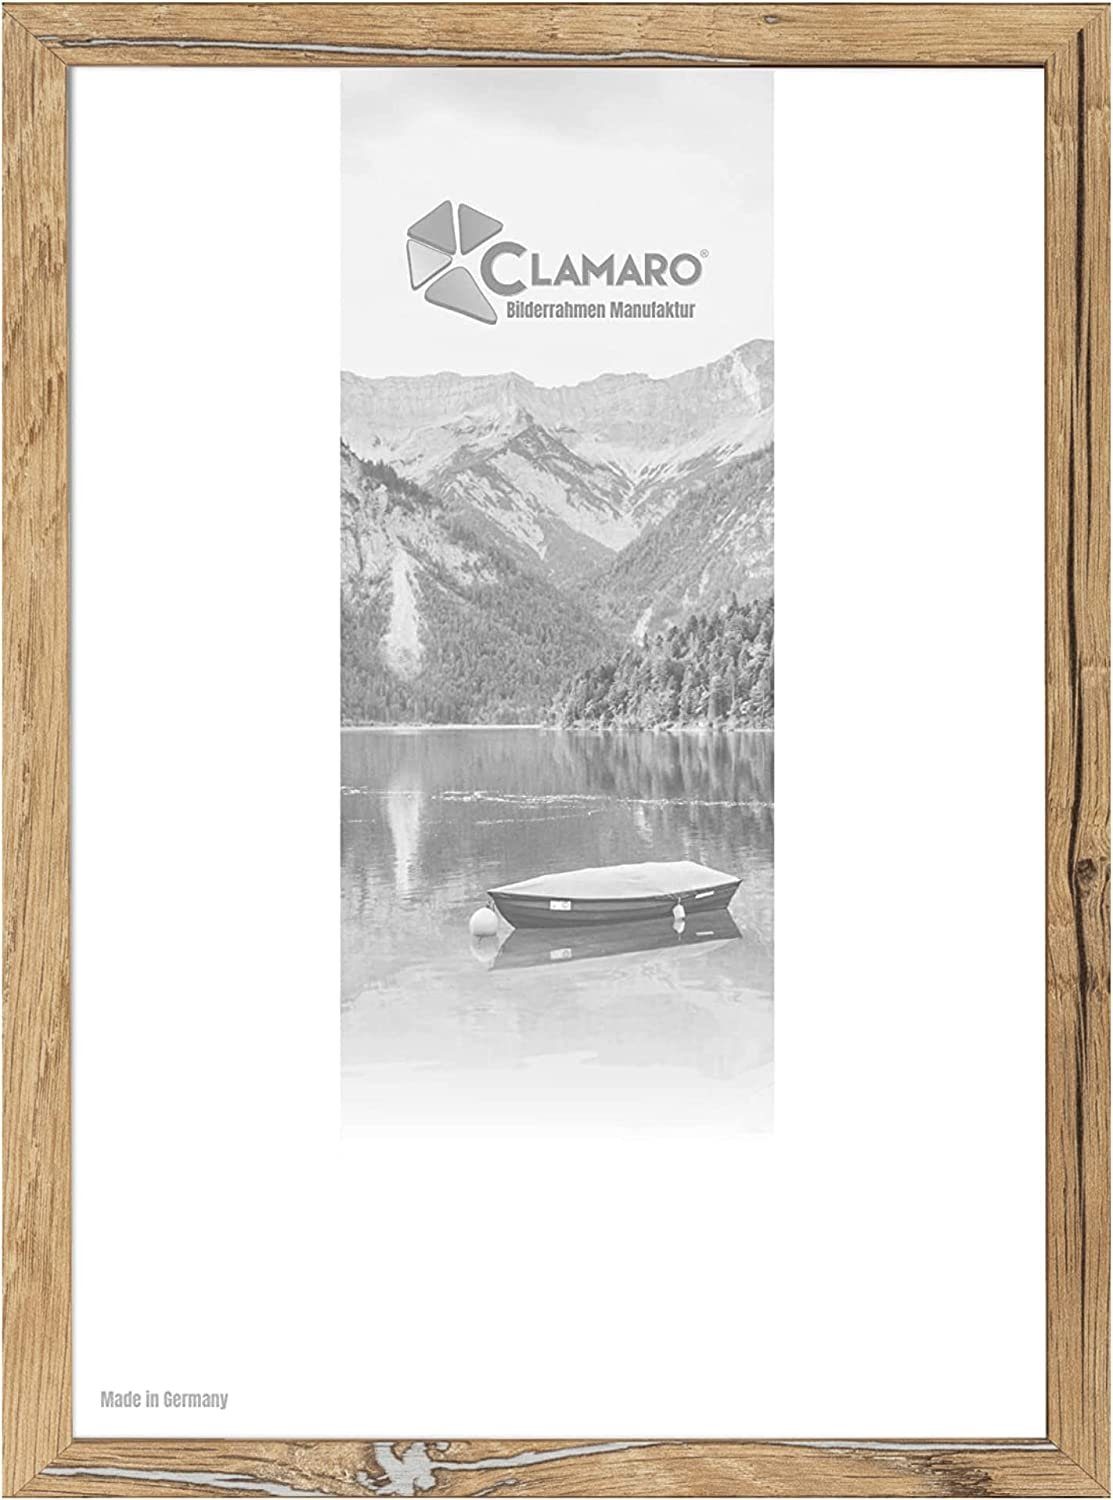 Clamaro Bilderrahmen Bilderrahmen Eiche Altholz CLAMARO Collage nach Maß FSC® Holz Modern eckig M3016 20x90 in Eiche Altholz